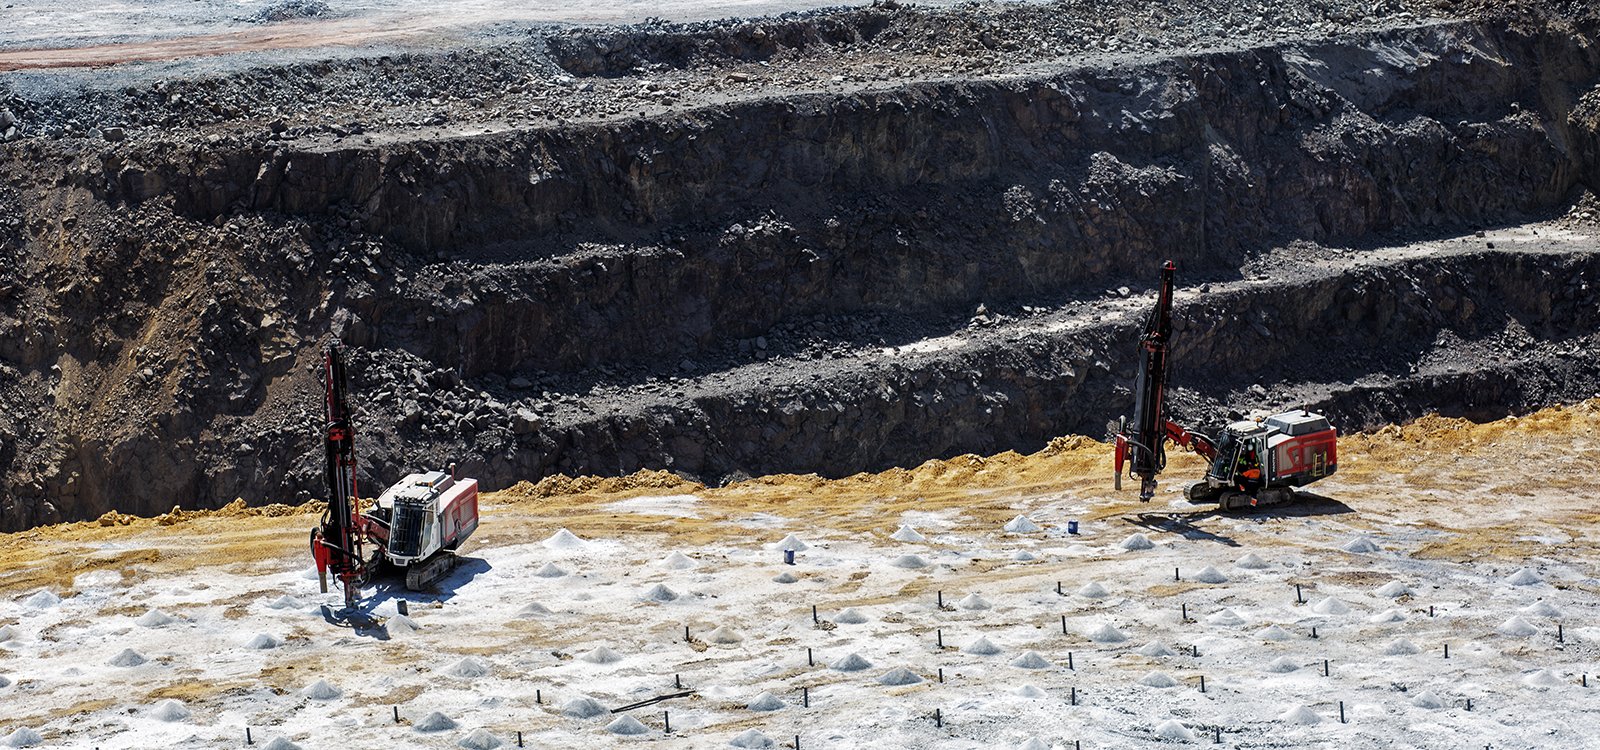 Медный рудник Рио-Тинто расположен на юго-западе Испании. Здесь Atalaya Mining стремится утроить добычу, достигнув показателя 15 миллионов тонн в год.